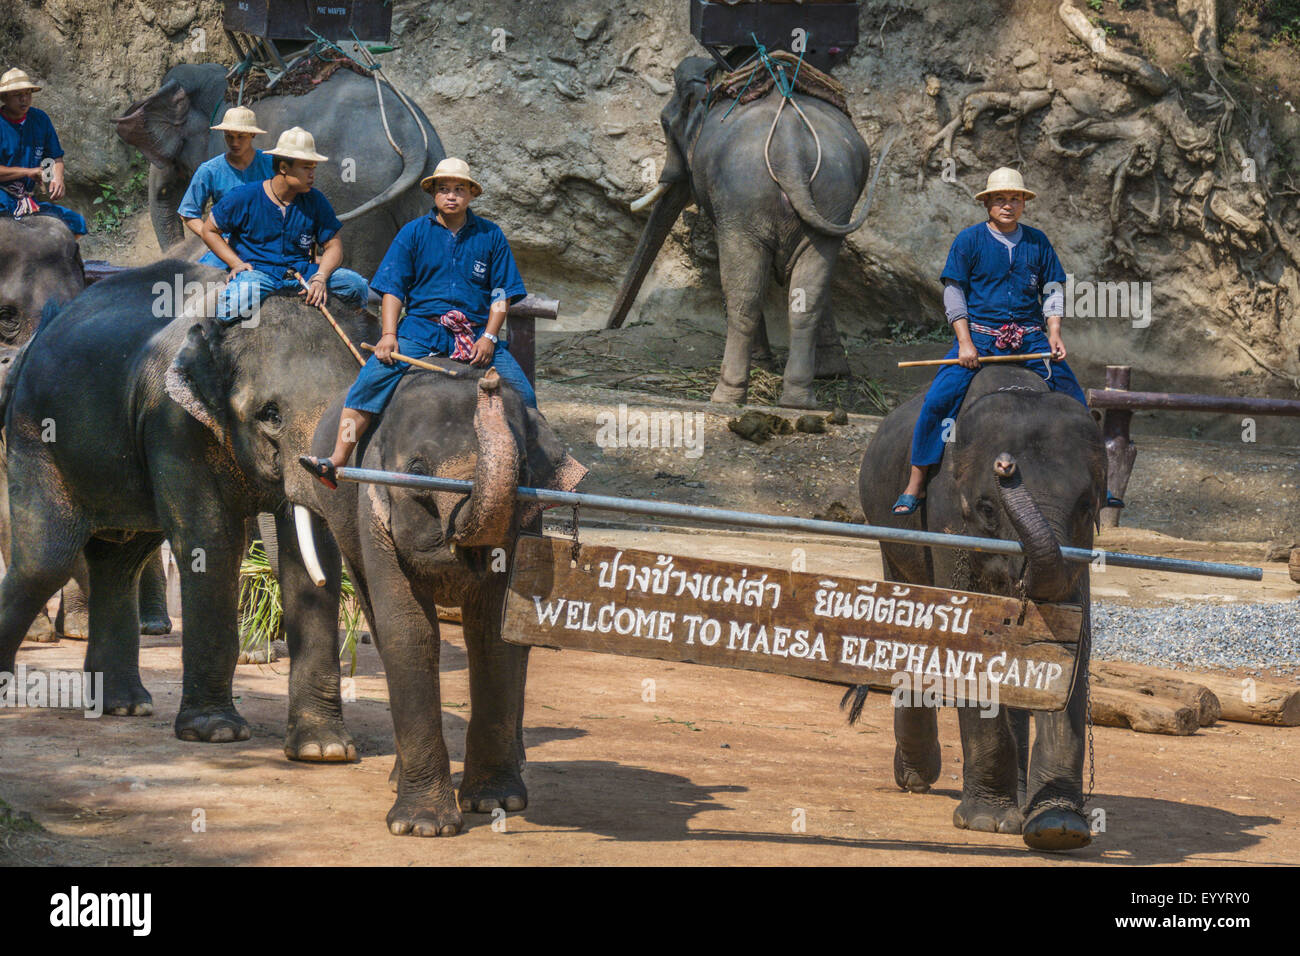 L'éléphant d'Asie, l'éléphant d'Asie (Elephas maximus), le spectacle d'ouverture cornacs avec leurs éléphants d'Asie dans le Maesa Elephant Camp, Chiang Mai, Thaïlande Banque D'Images